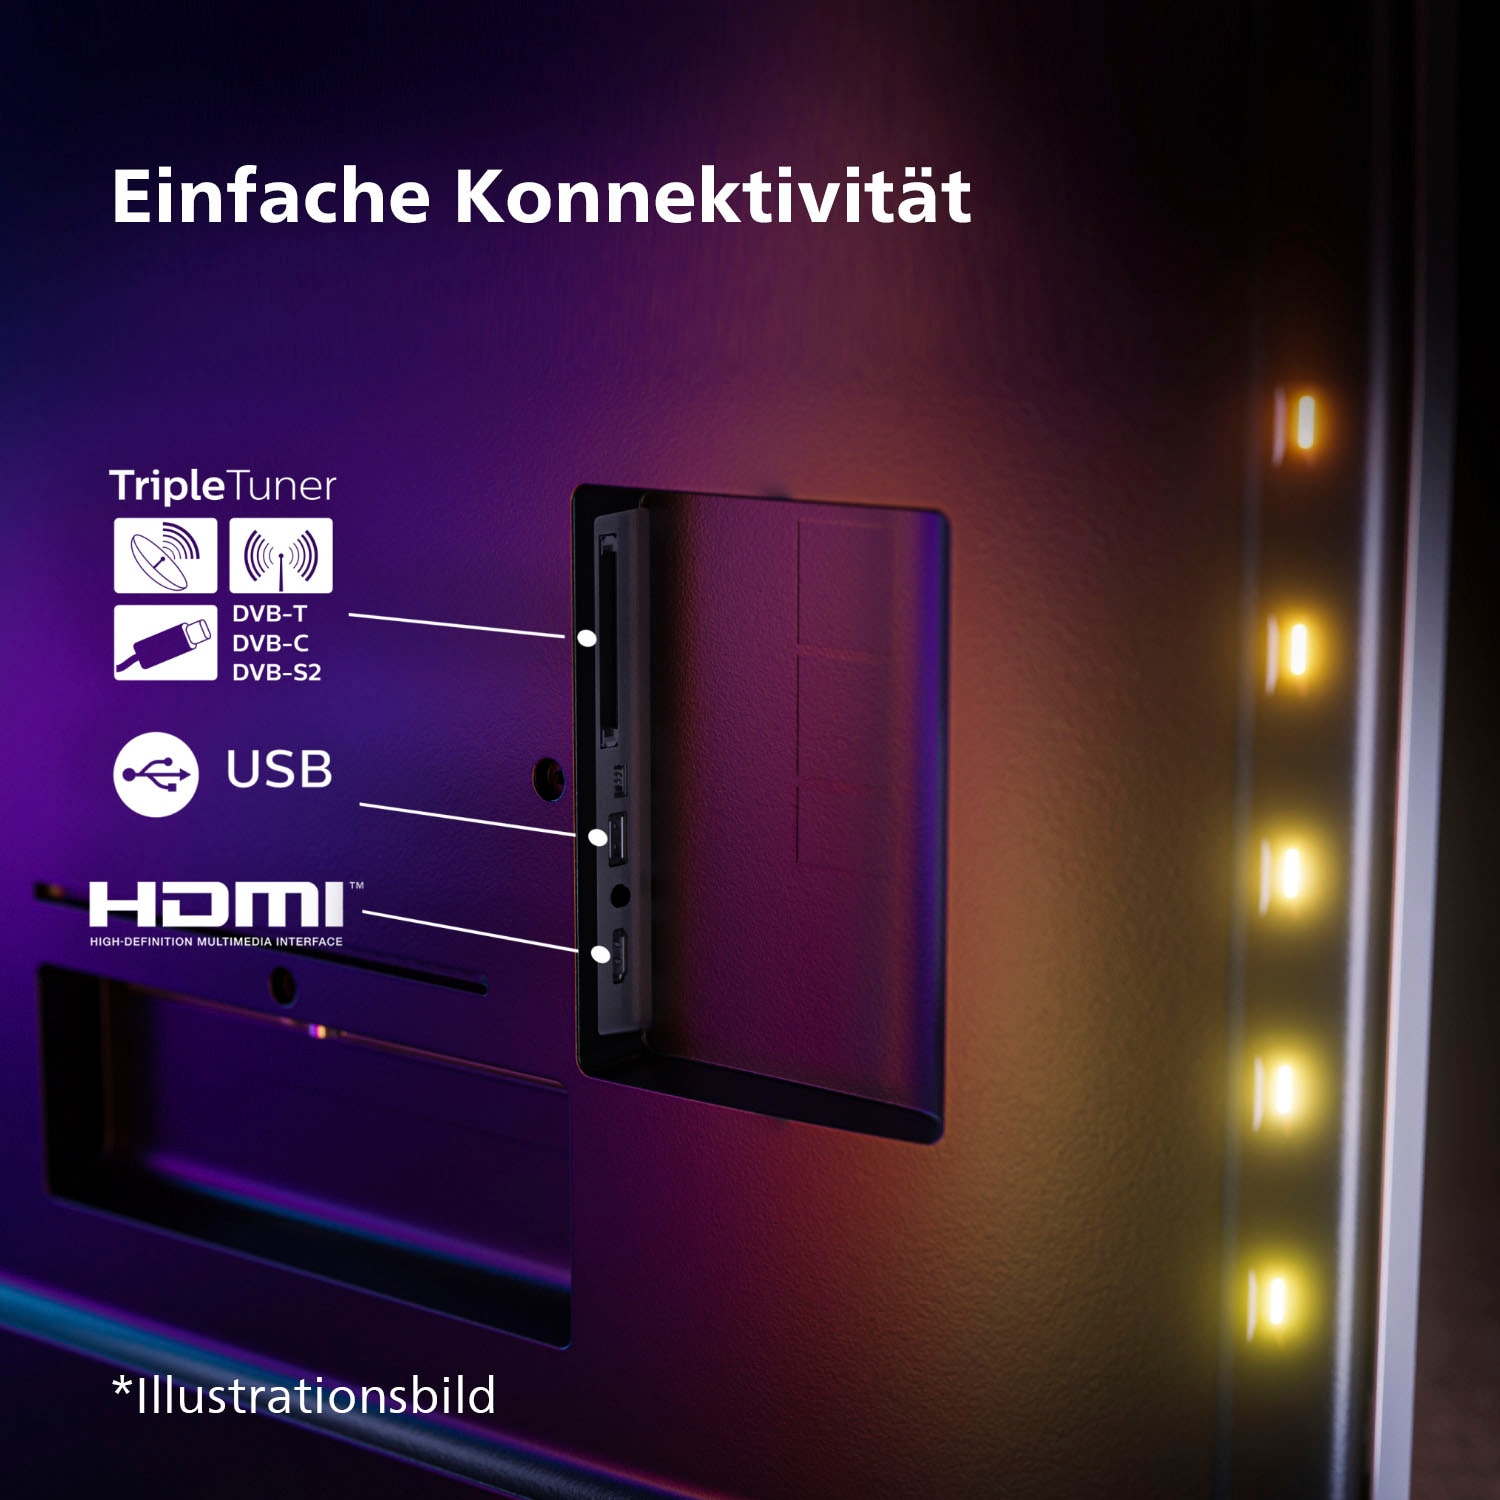 4K Rechnung HD, Ultra 108 »43PUS8108/12«, kaufen auf Zoll, cm/43 LED-Fernseher Smart-TV Philips